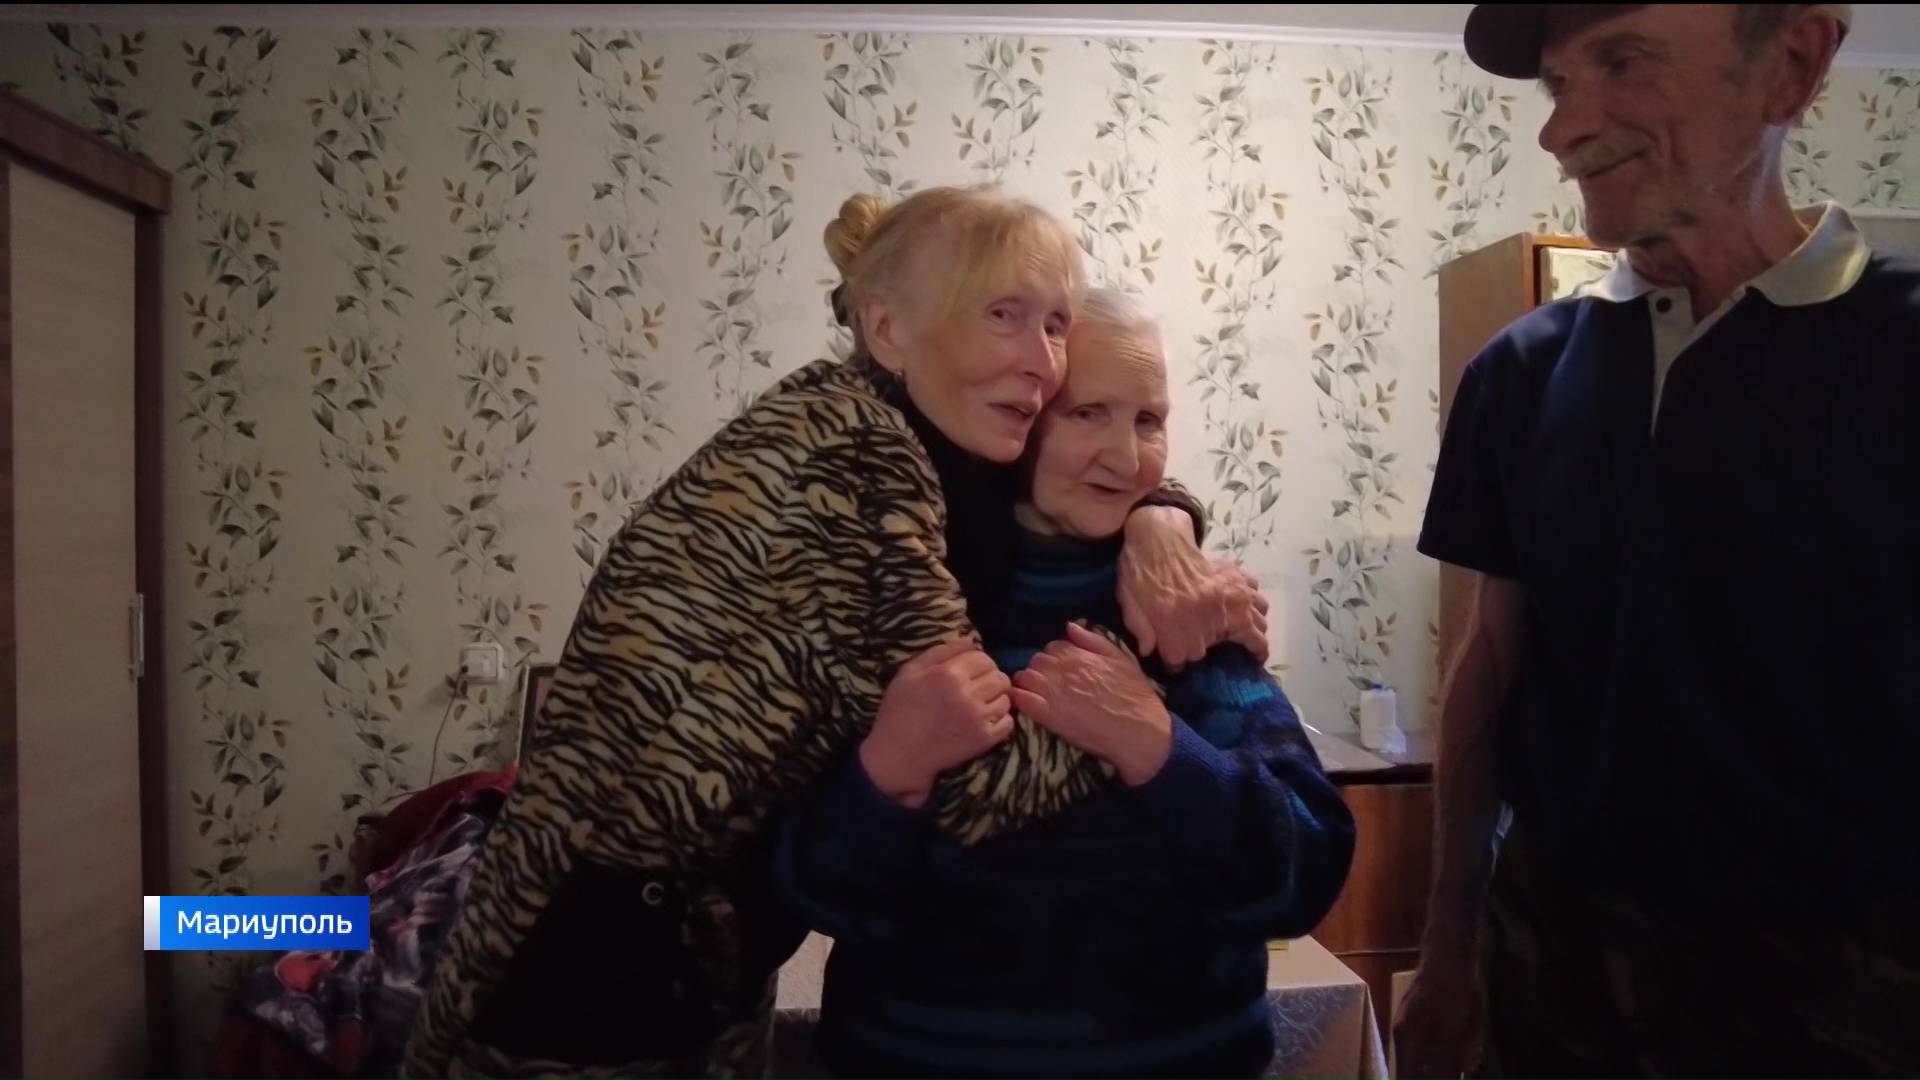 Пенсионерка из Башкирии спустя два года поисков нашла сестру в Мариуполе и вернулась в родной город